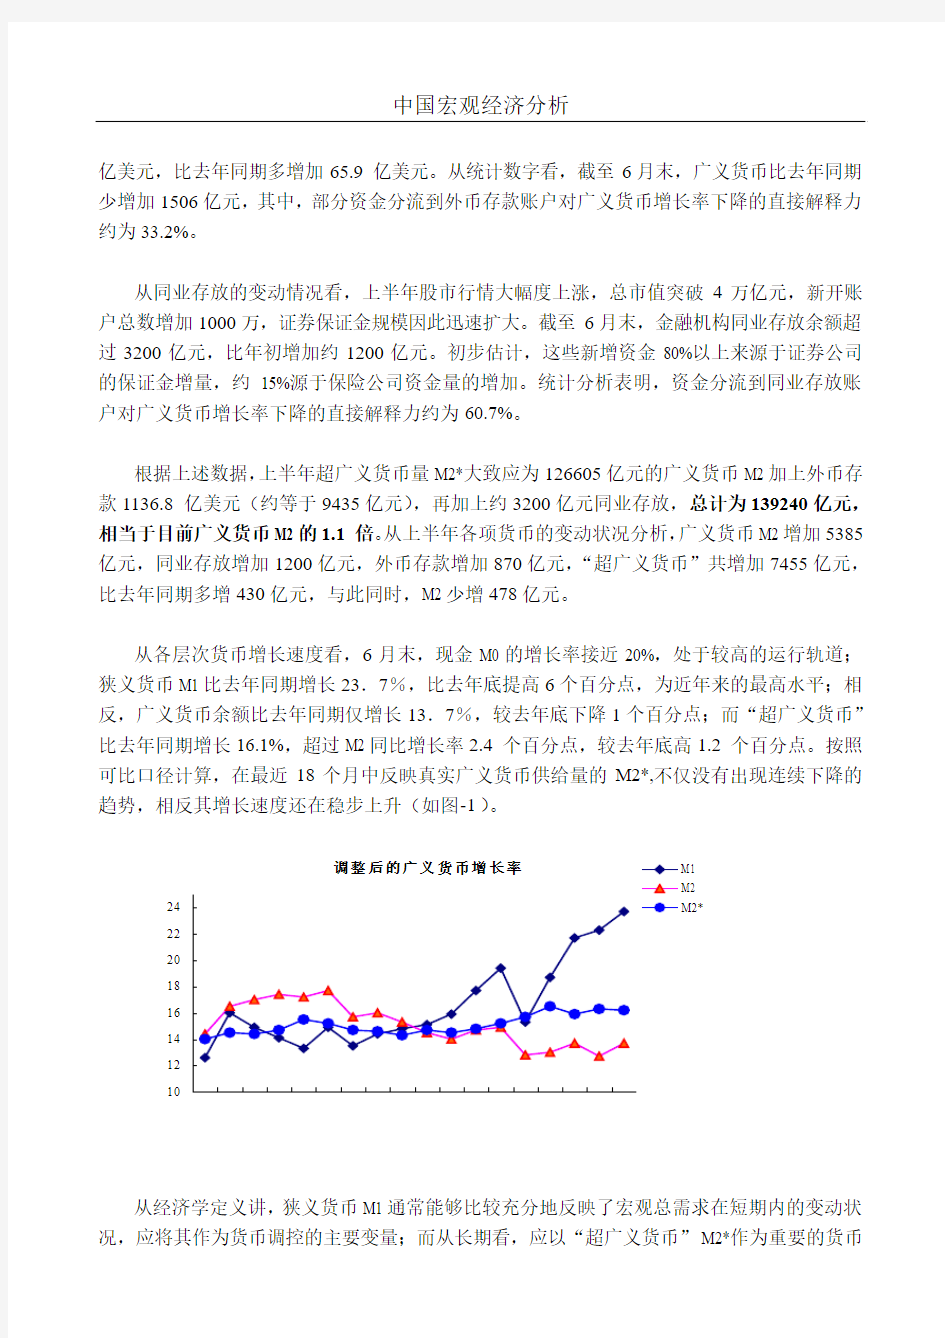 中国宏观经济分析从超广义货币m看货币政策变动趋势